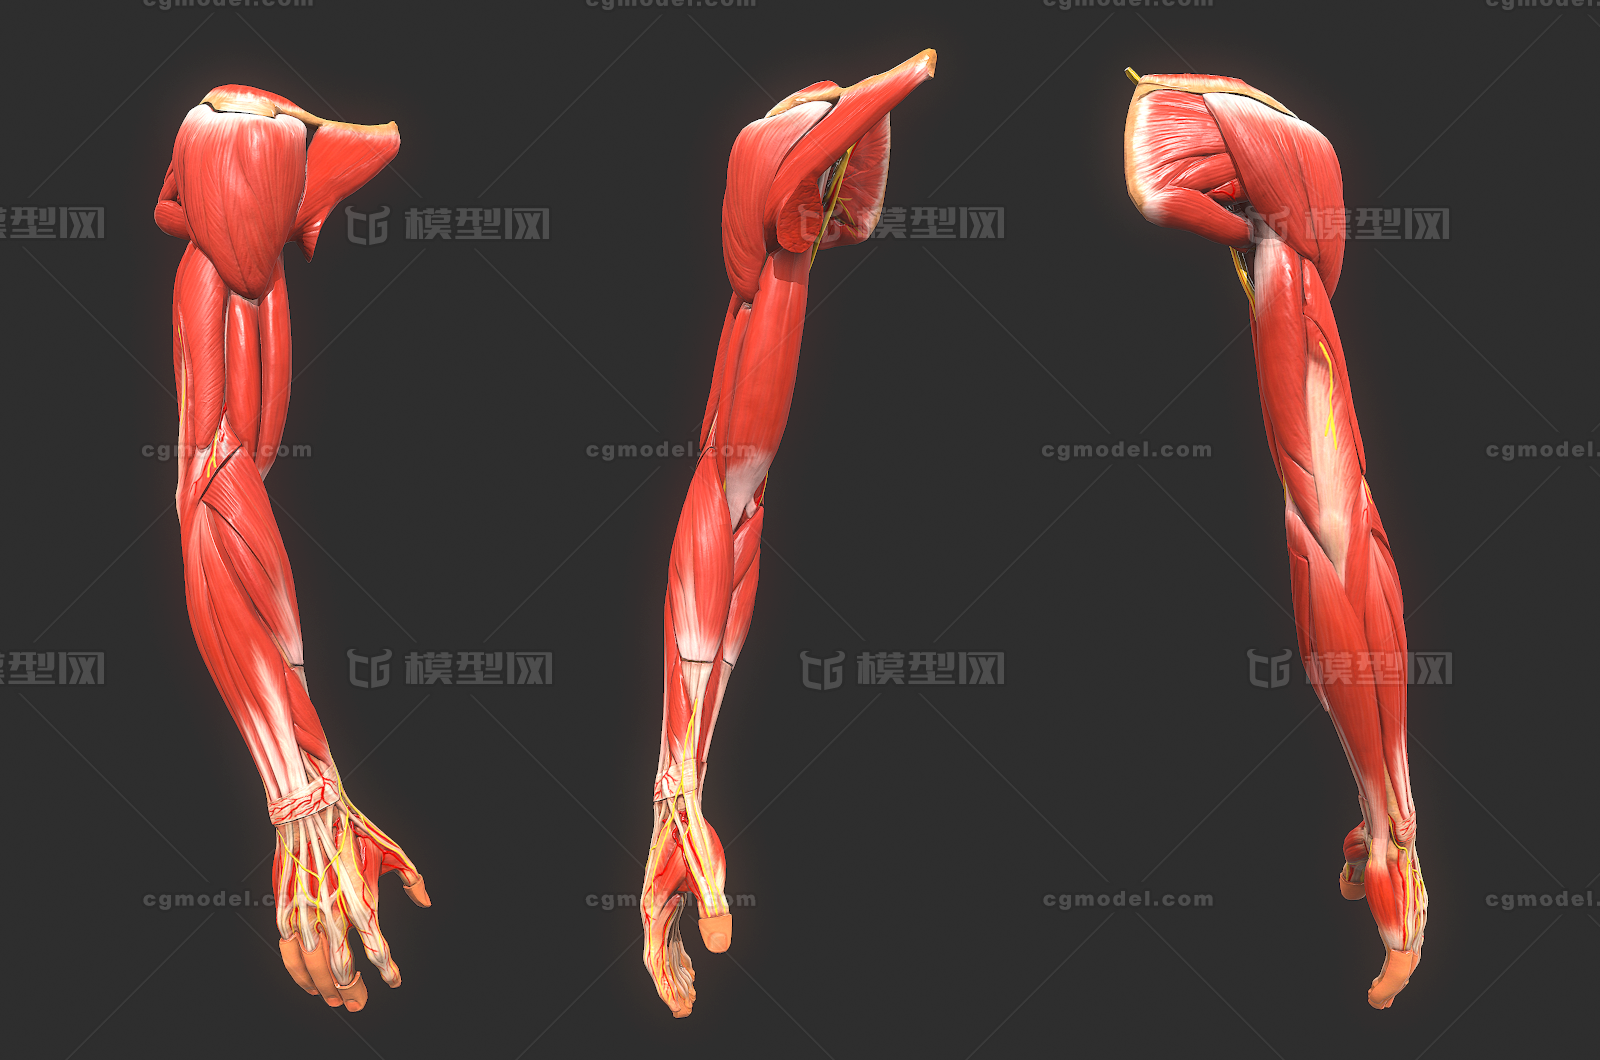 143 pbr次世代 手臂 大臂 小臂 肌肉 解剖 剖面 手指 骨骼 人体 器官